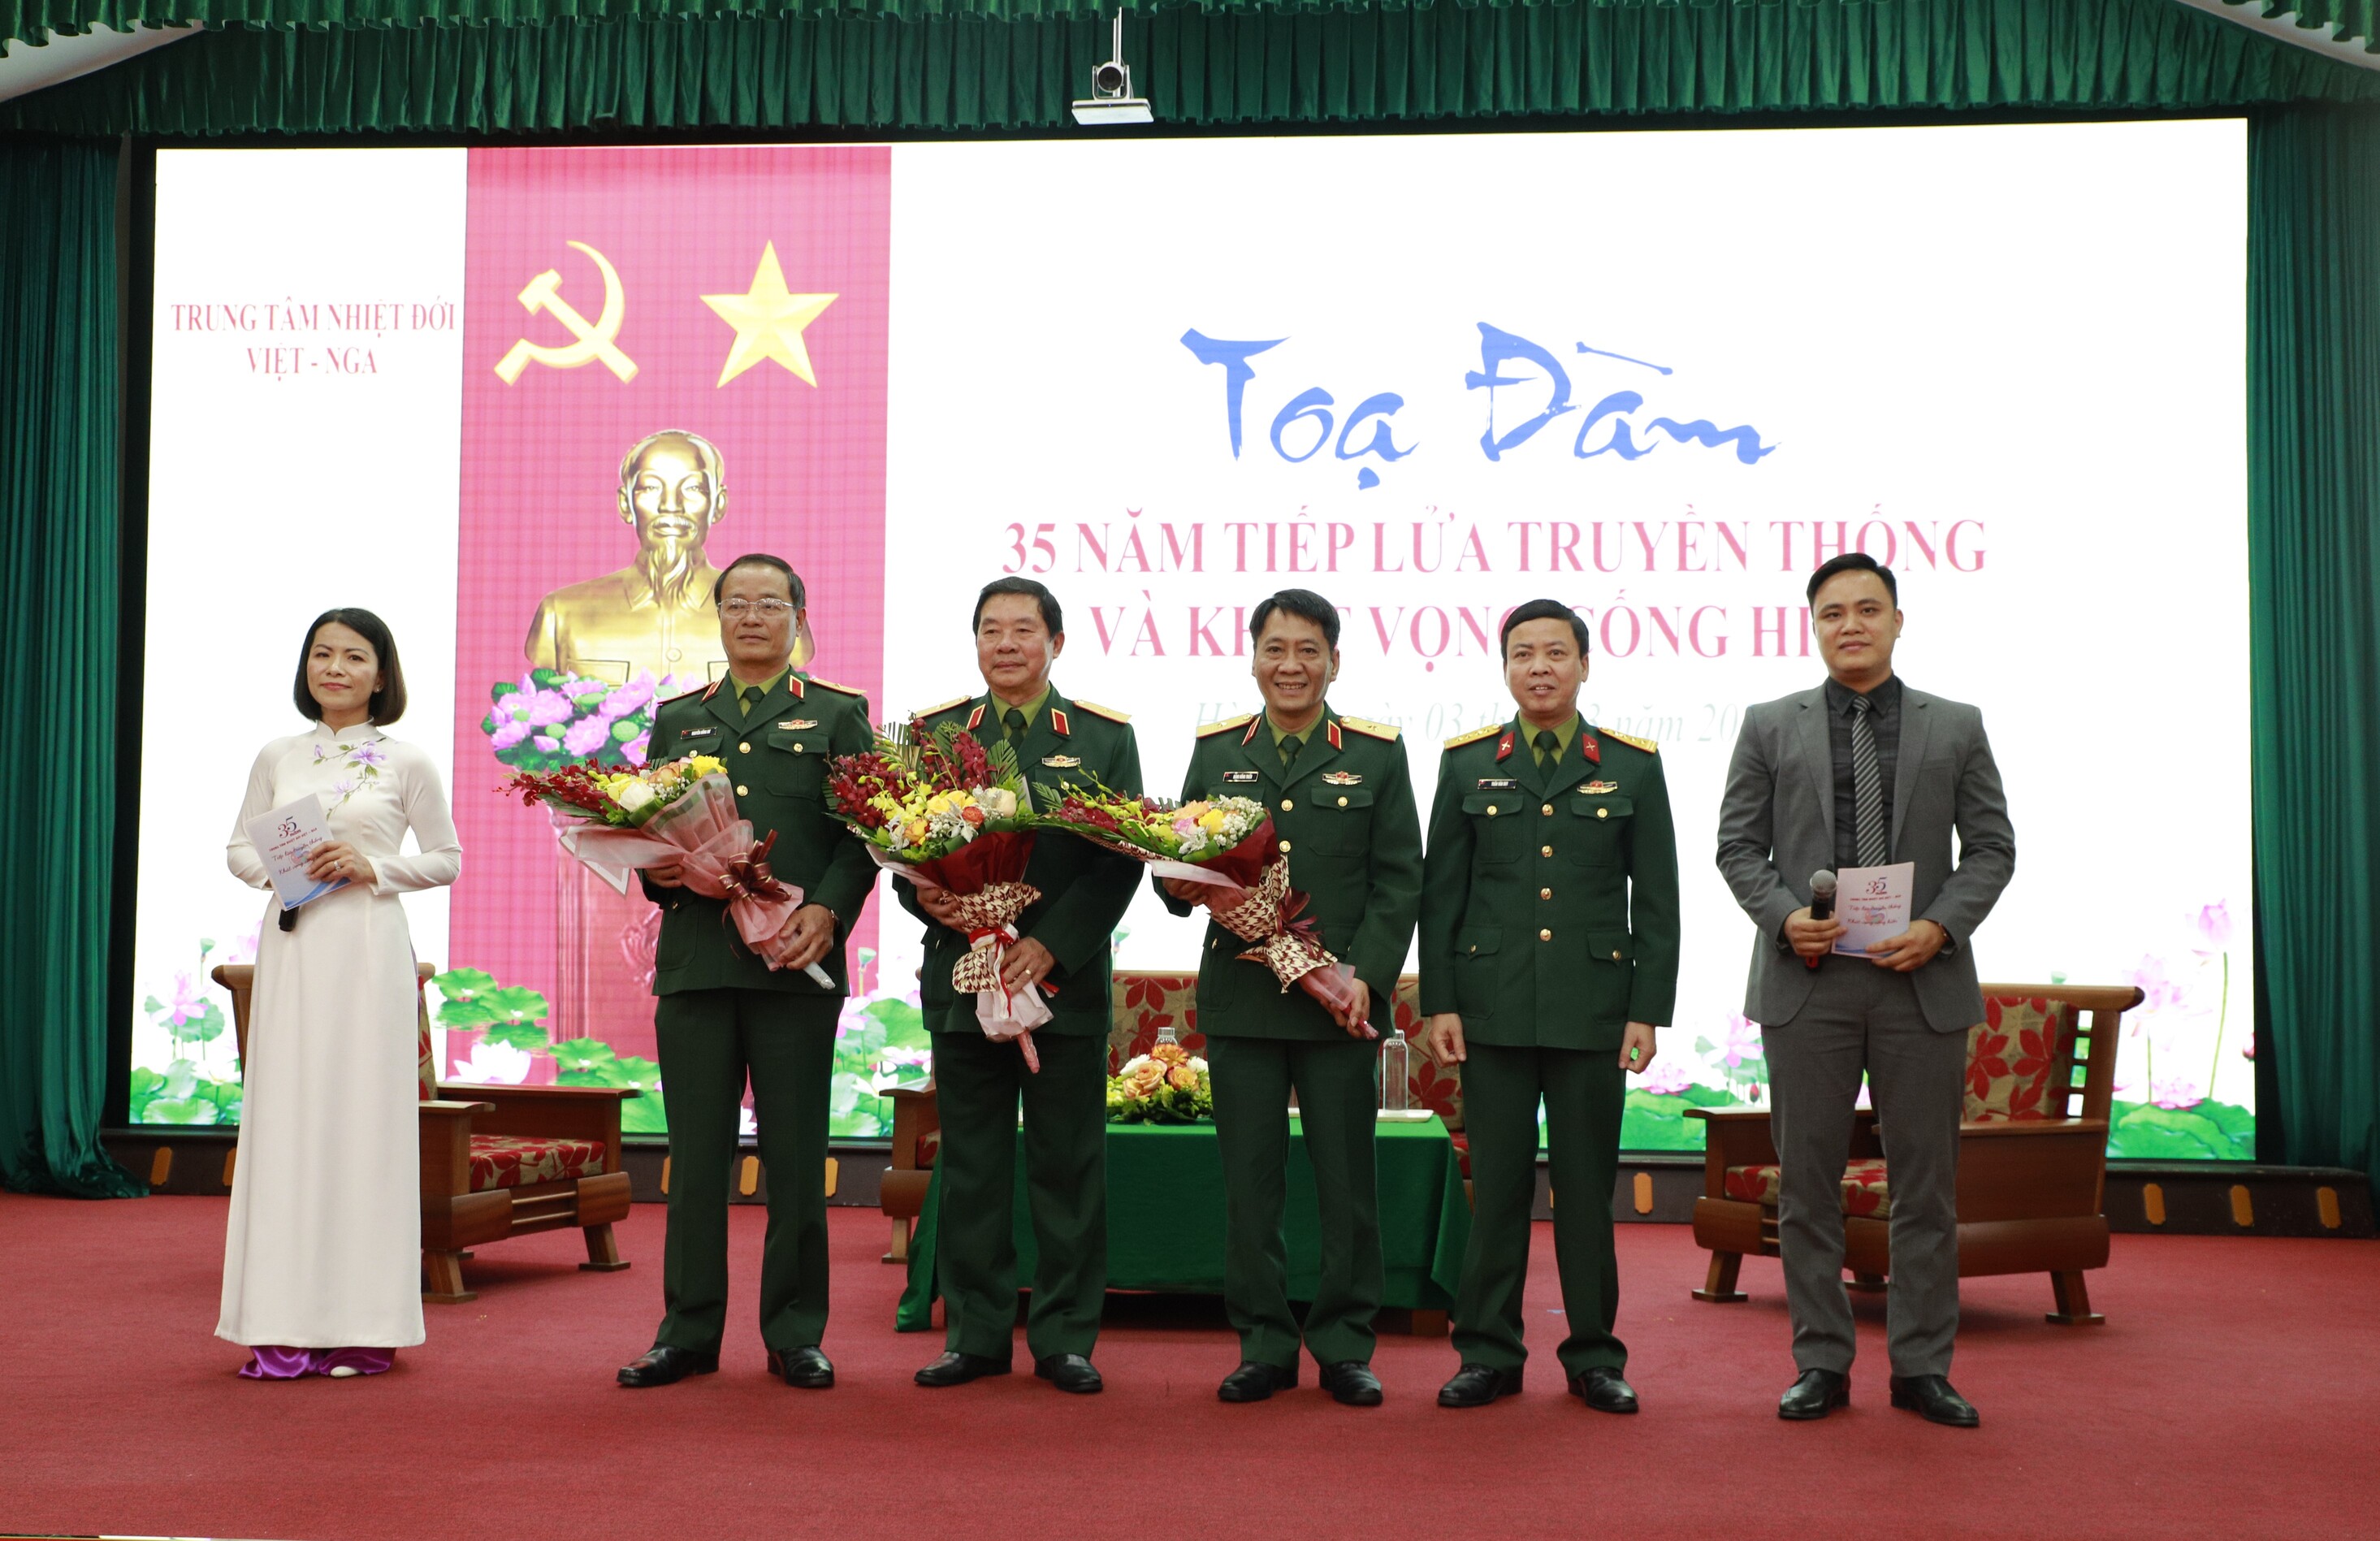 Tọa đàm, gặp mặt truyền thống nhân kỷ niệm 35 năm Ngày thành lập Trung tâm Nhiệt đới Việt - Nga (07/3/1988 - 07/3/2023)